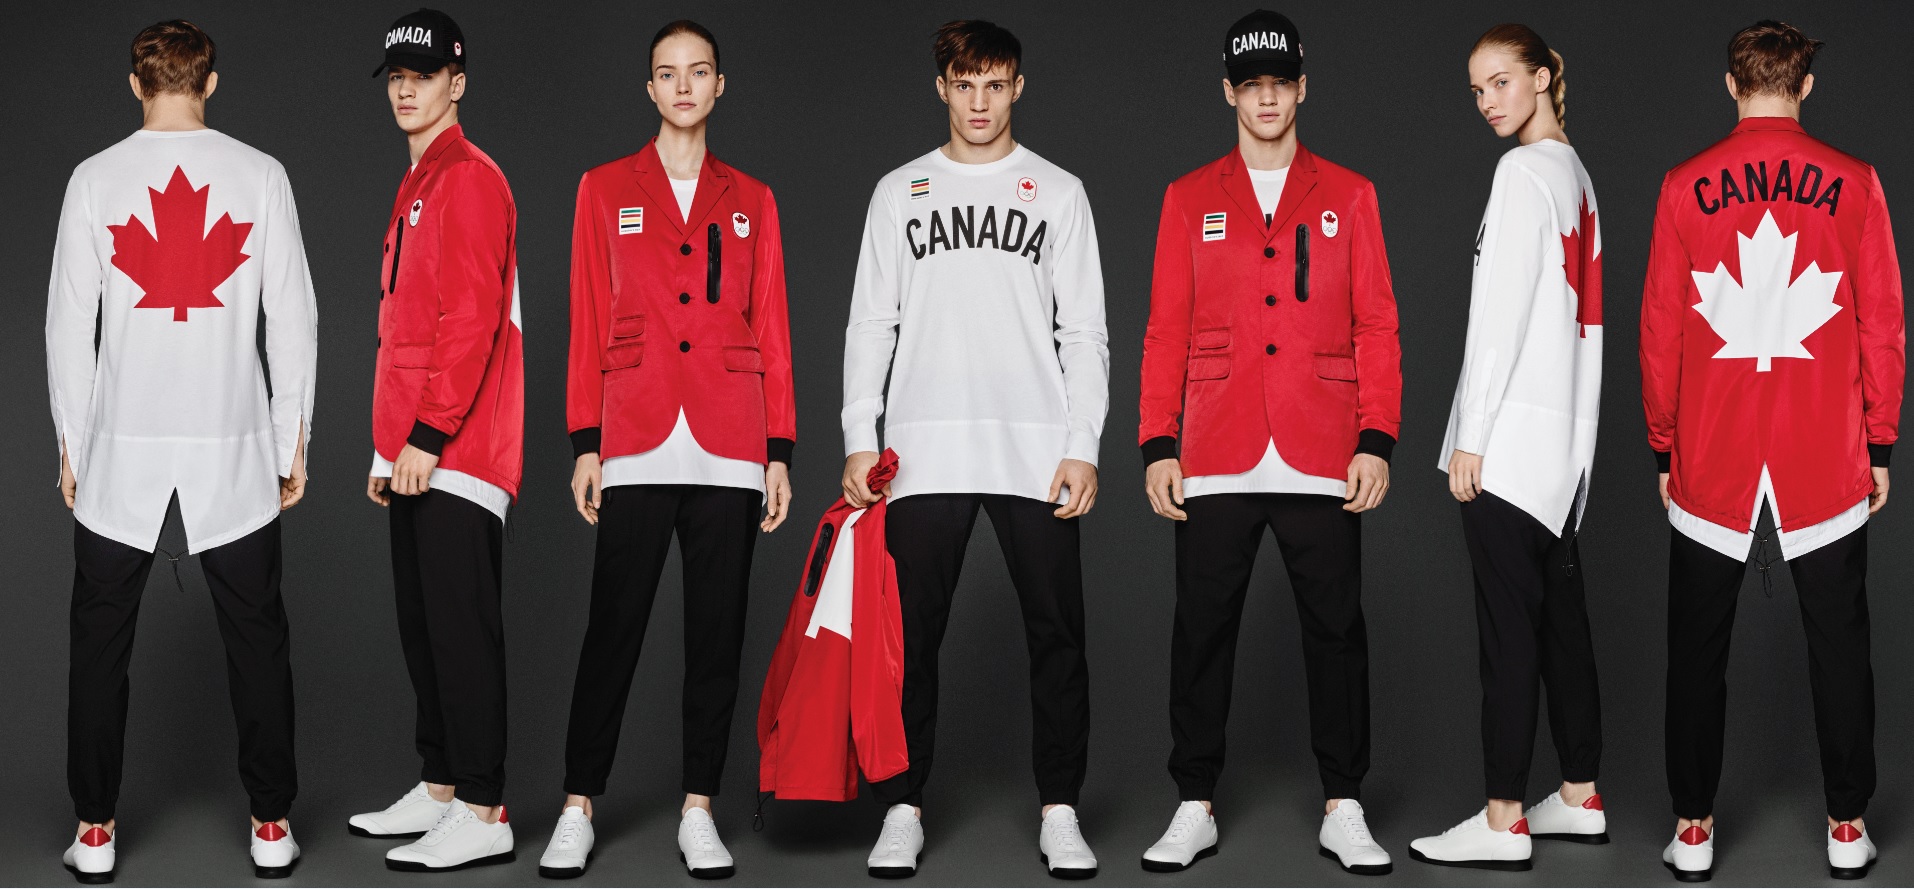 Olimpiadi 2016 Rio de Janeiro: Dsquared2 veste il team Canada per la cerimonia di apertura dei Giochi Olimpici